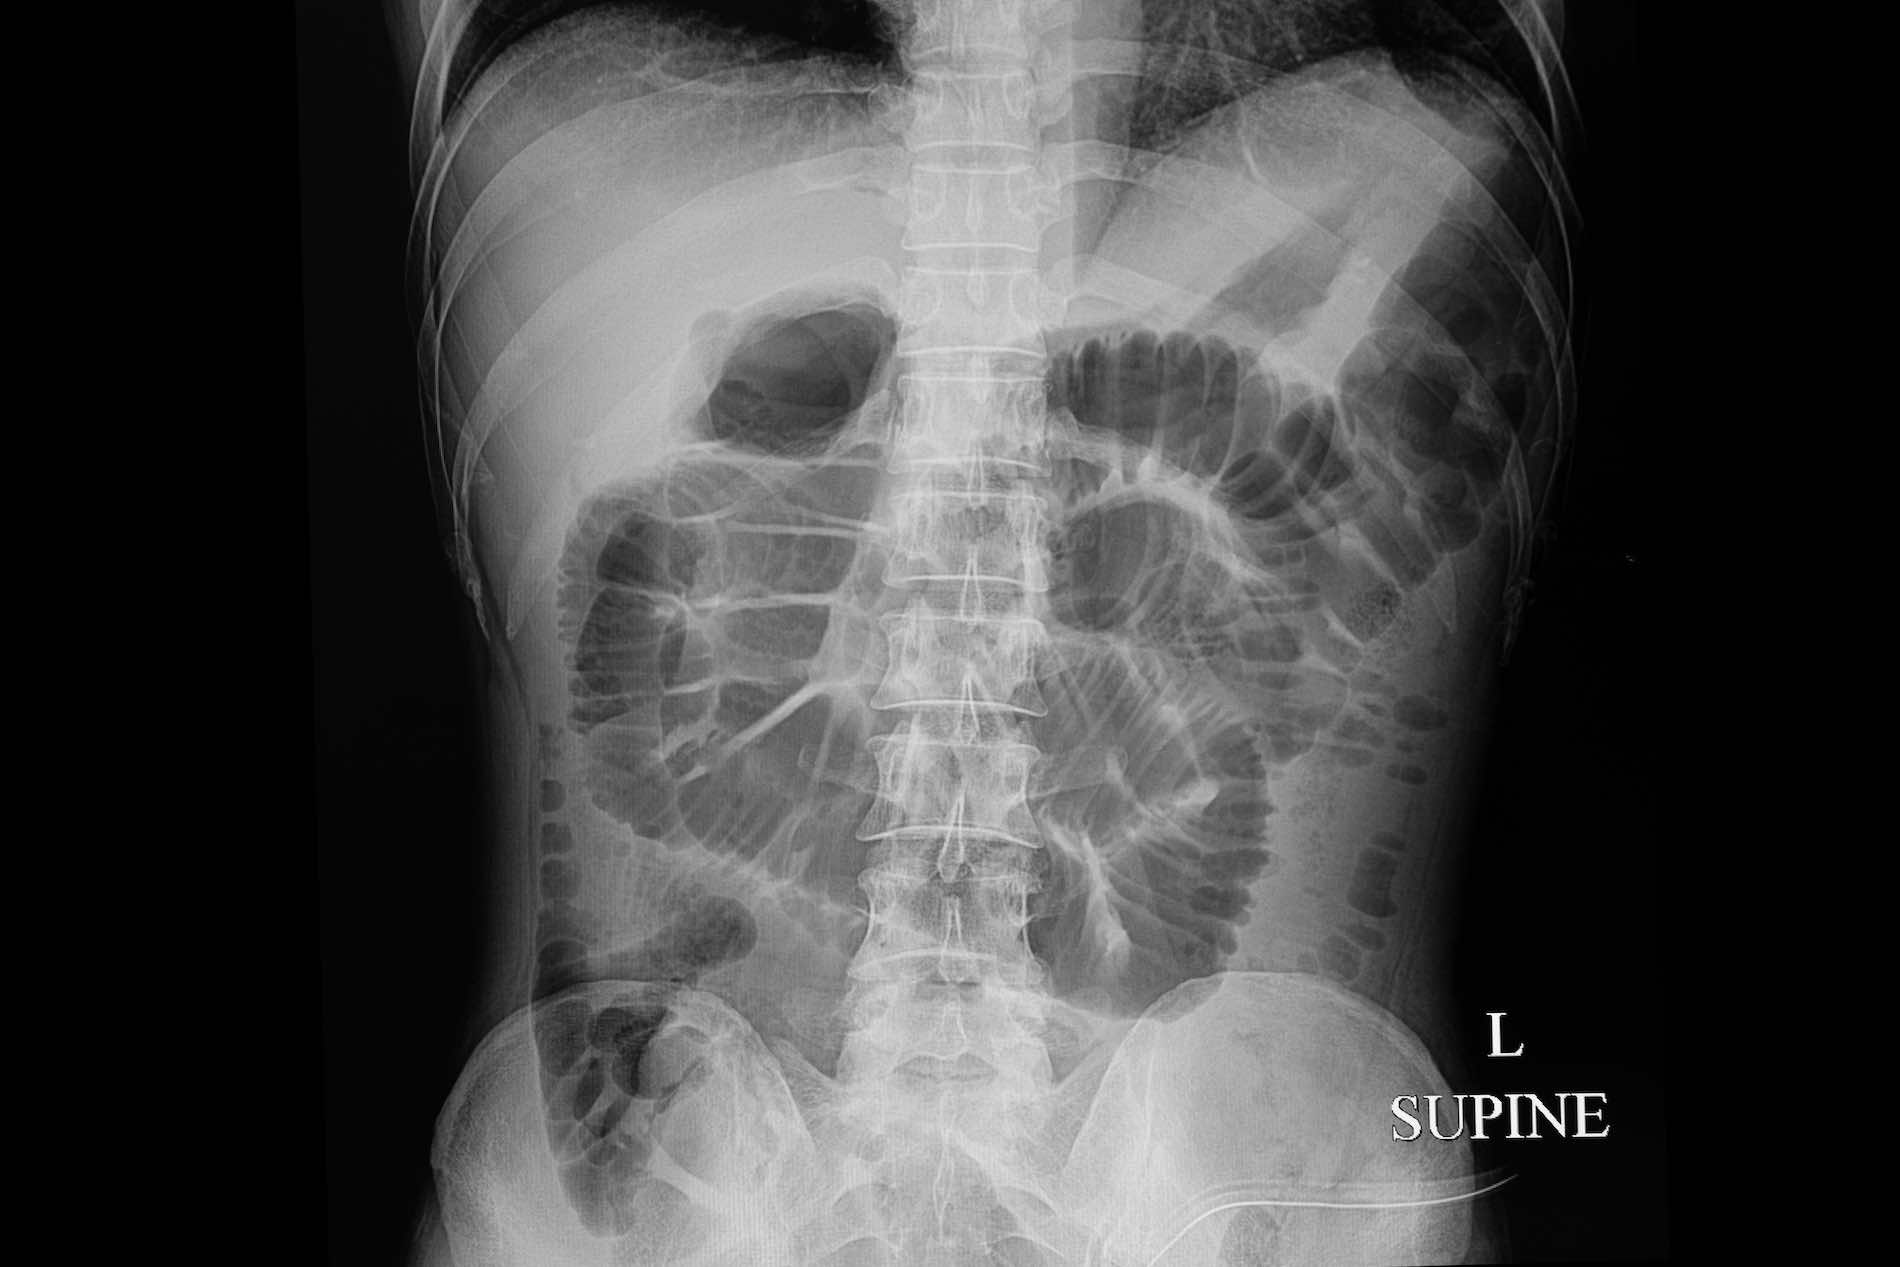 Röntgenbild eines mechanischen Darmverschlusses